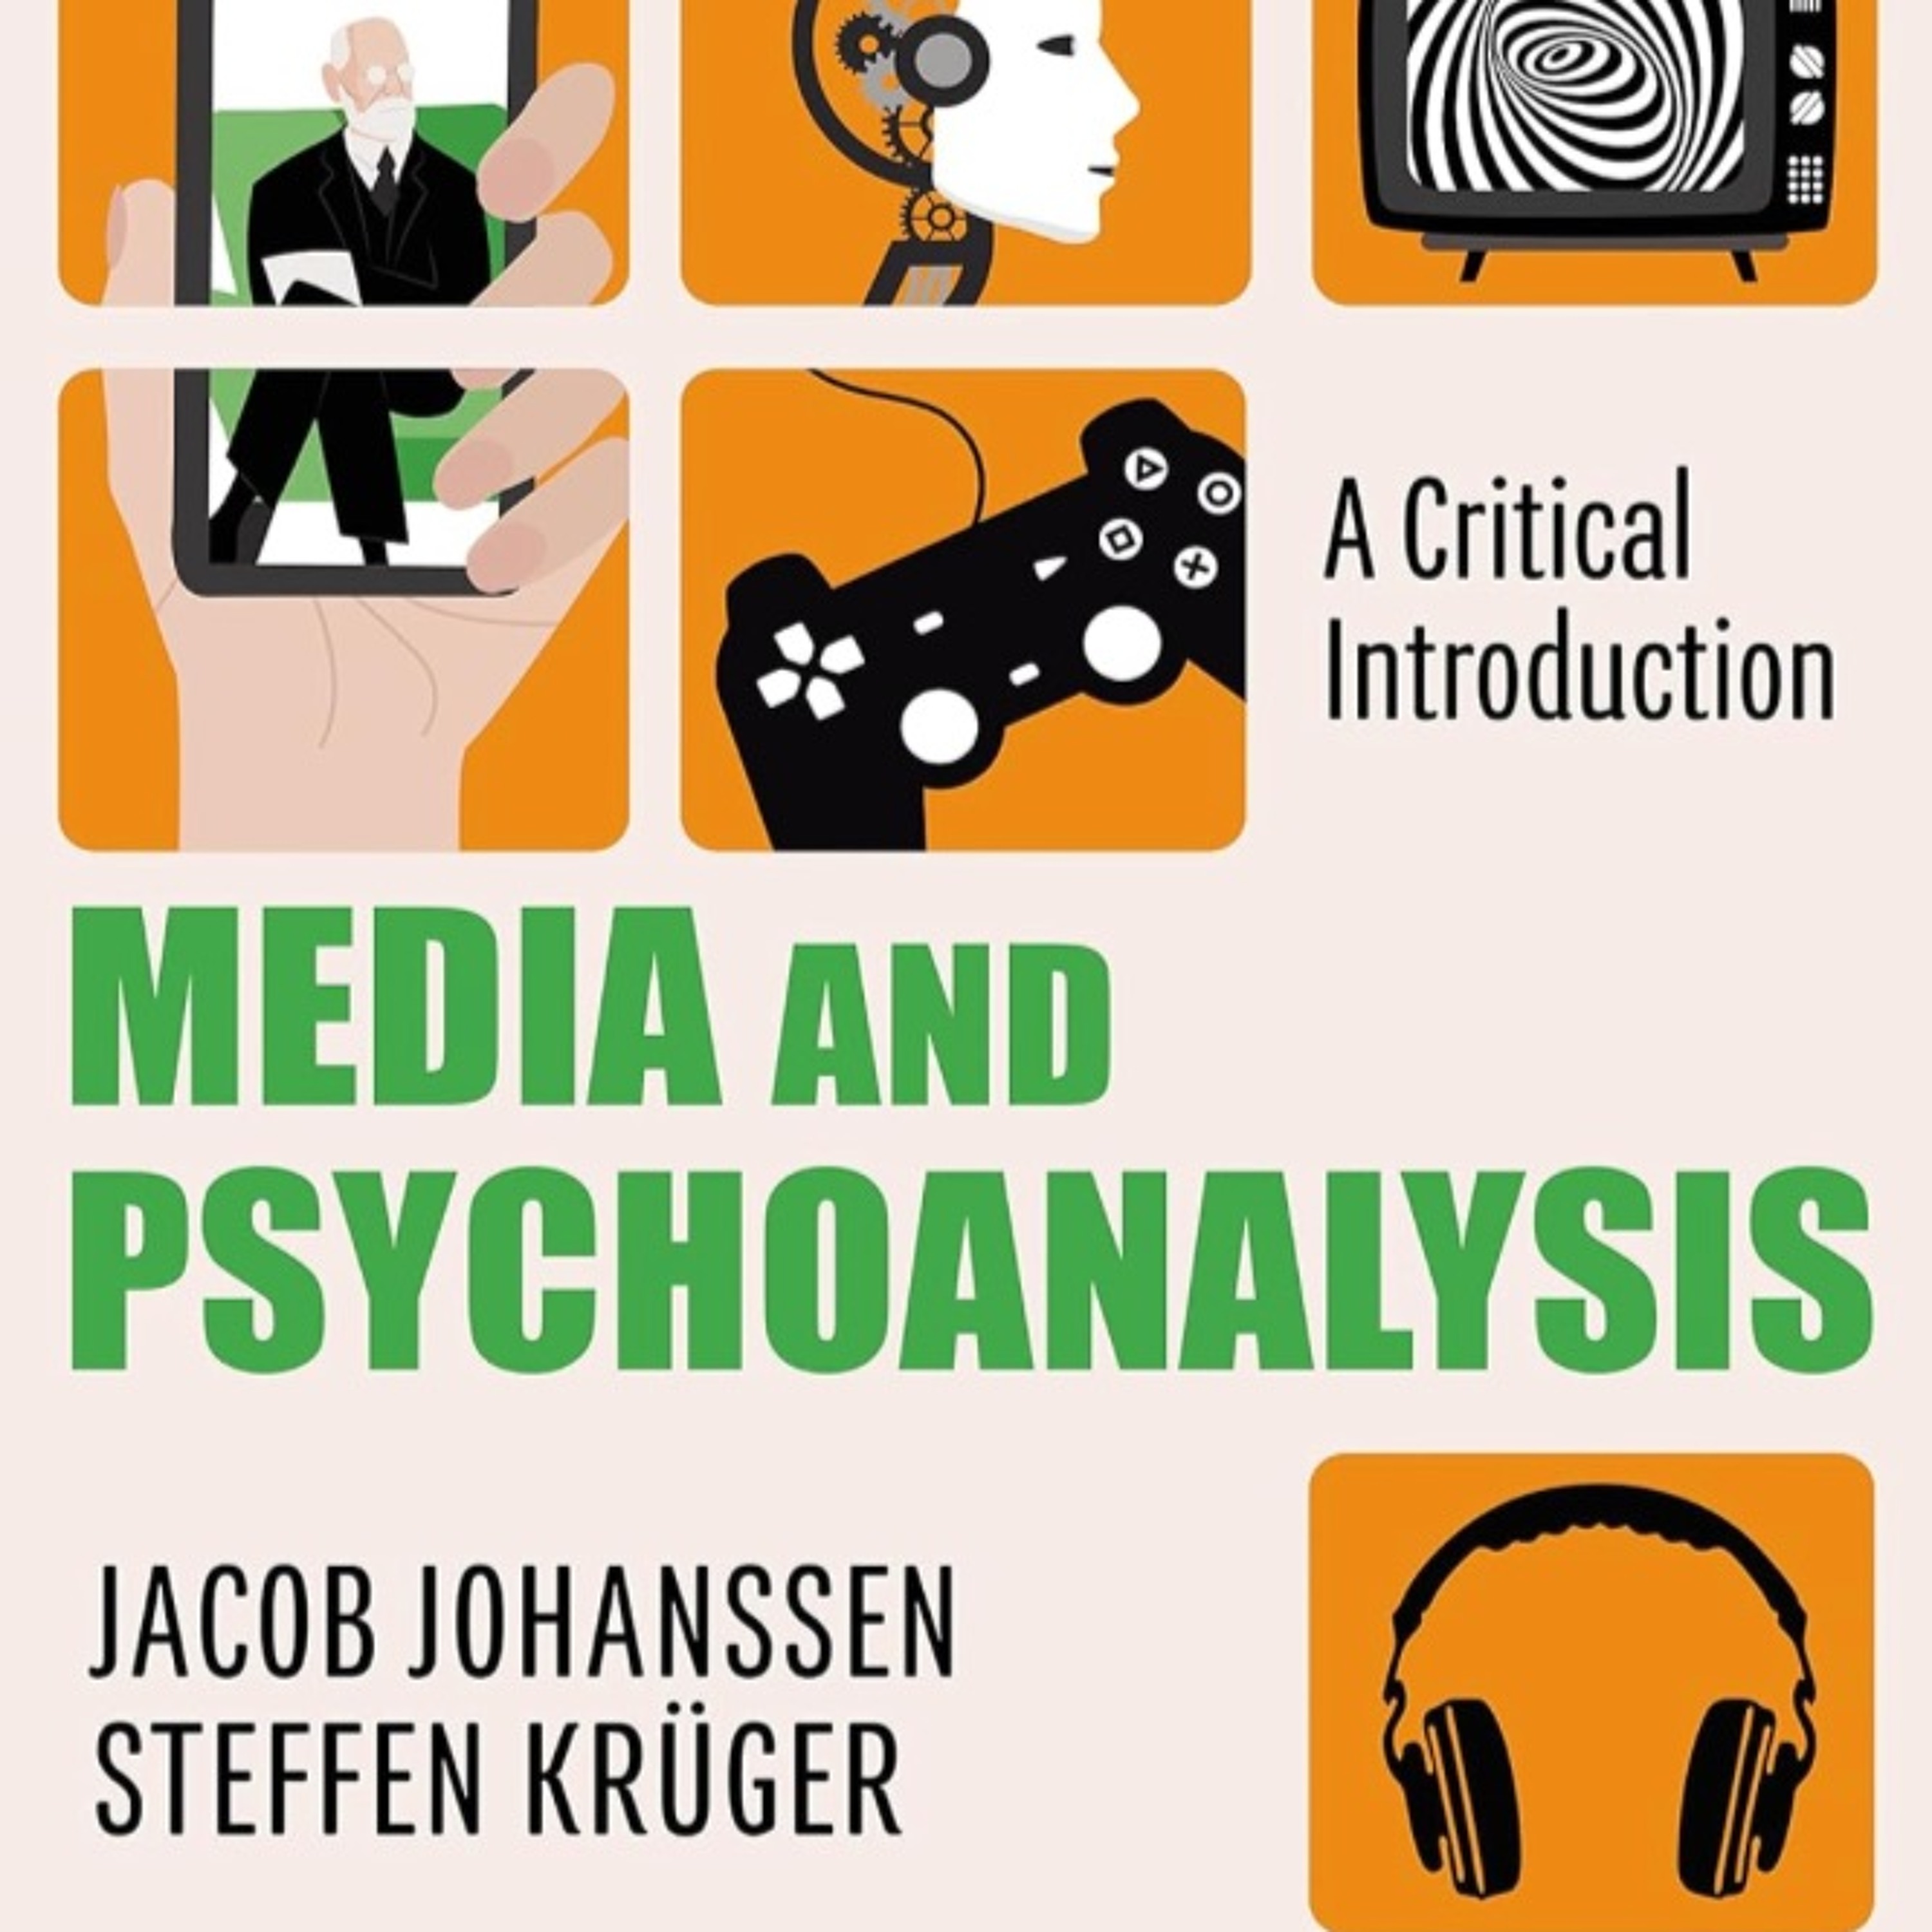 RU281: DRS JACOB JOHANSSEN & STEFFEN KRUEGER ON MEDIA & PSYCHOANALYSIS, A CRITICAL INTRODUCTION